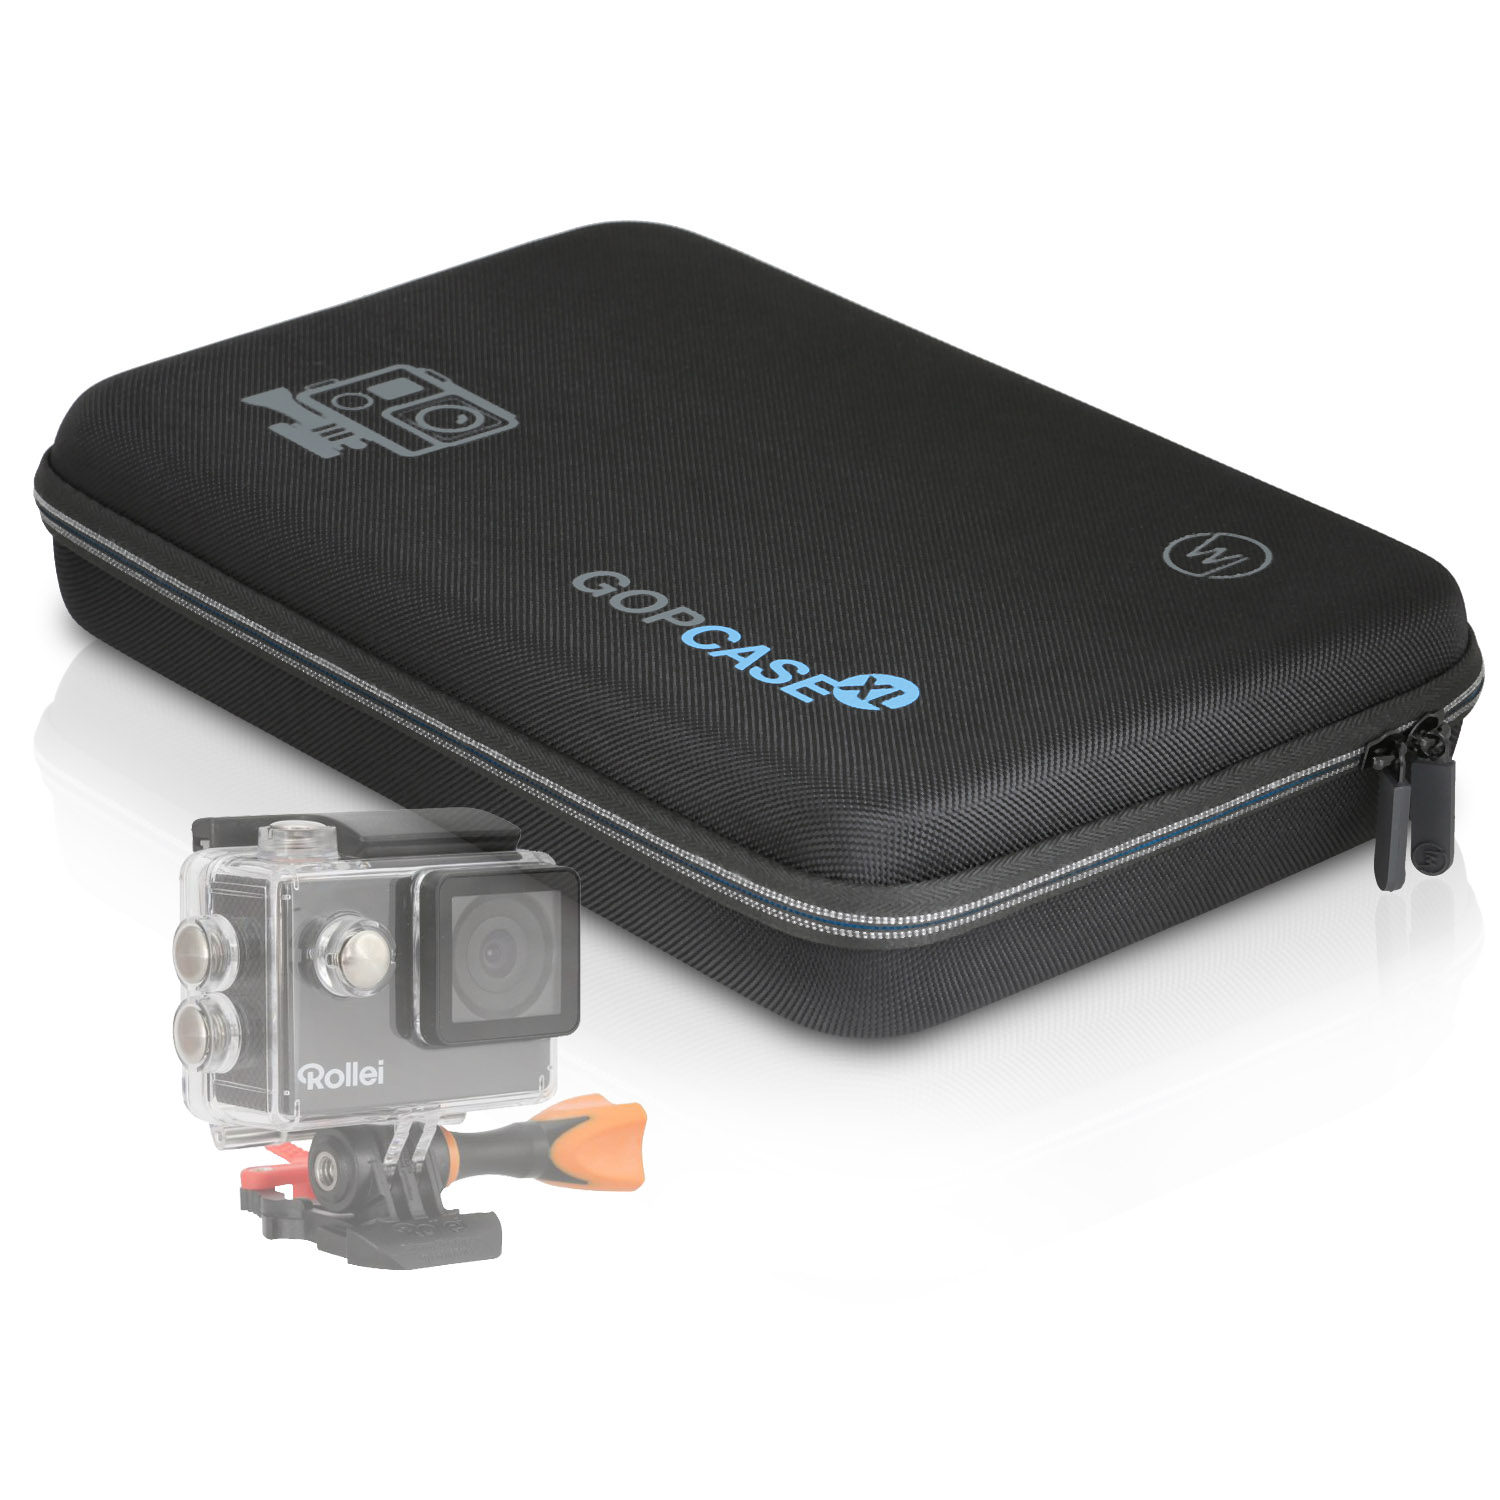 WICKED CHILI Case schwarz 560 / kompatibel / 510 Schutztasche, Kamera für / / GOP Tasche Actioncam mit 550 425 / Rollei Koffer 540 530